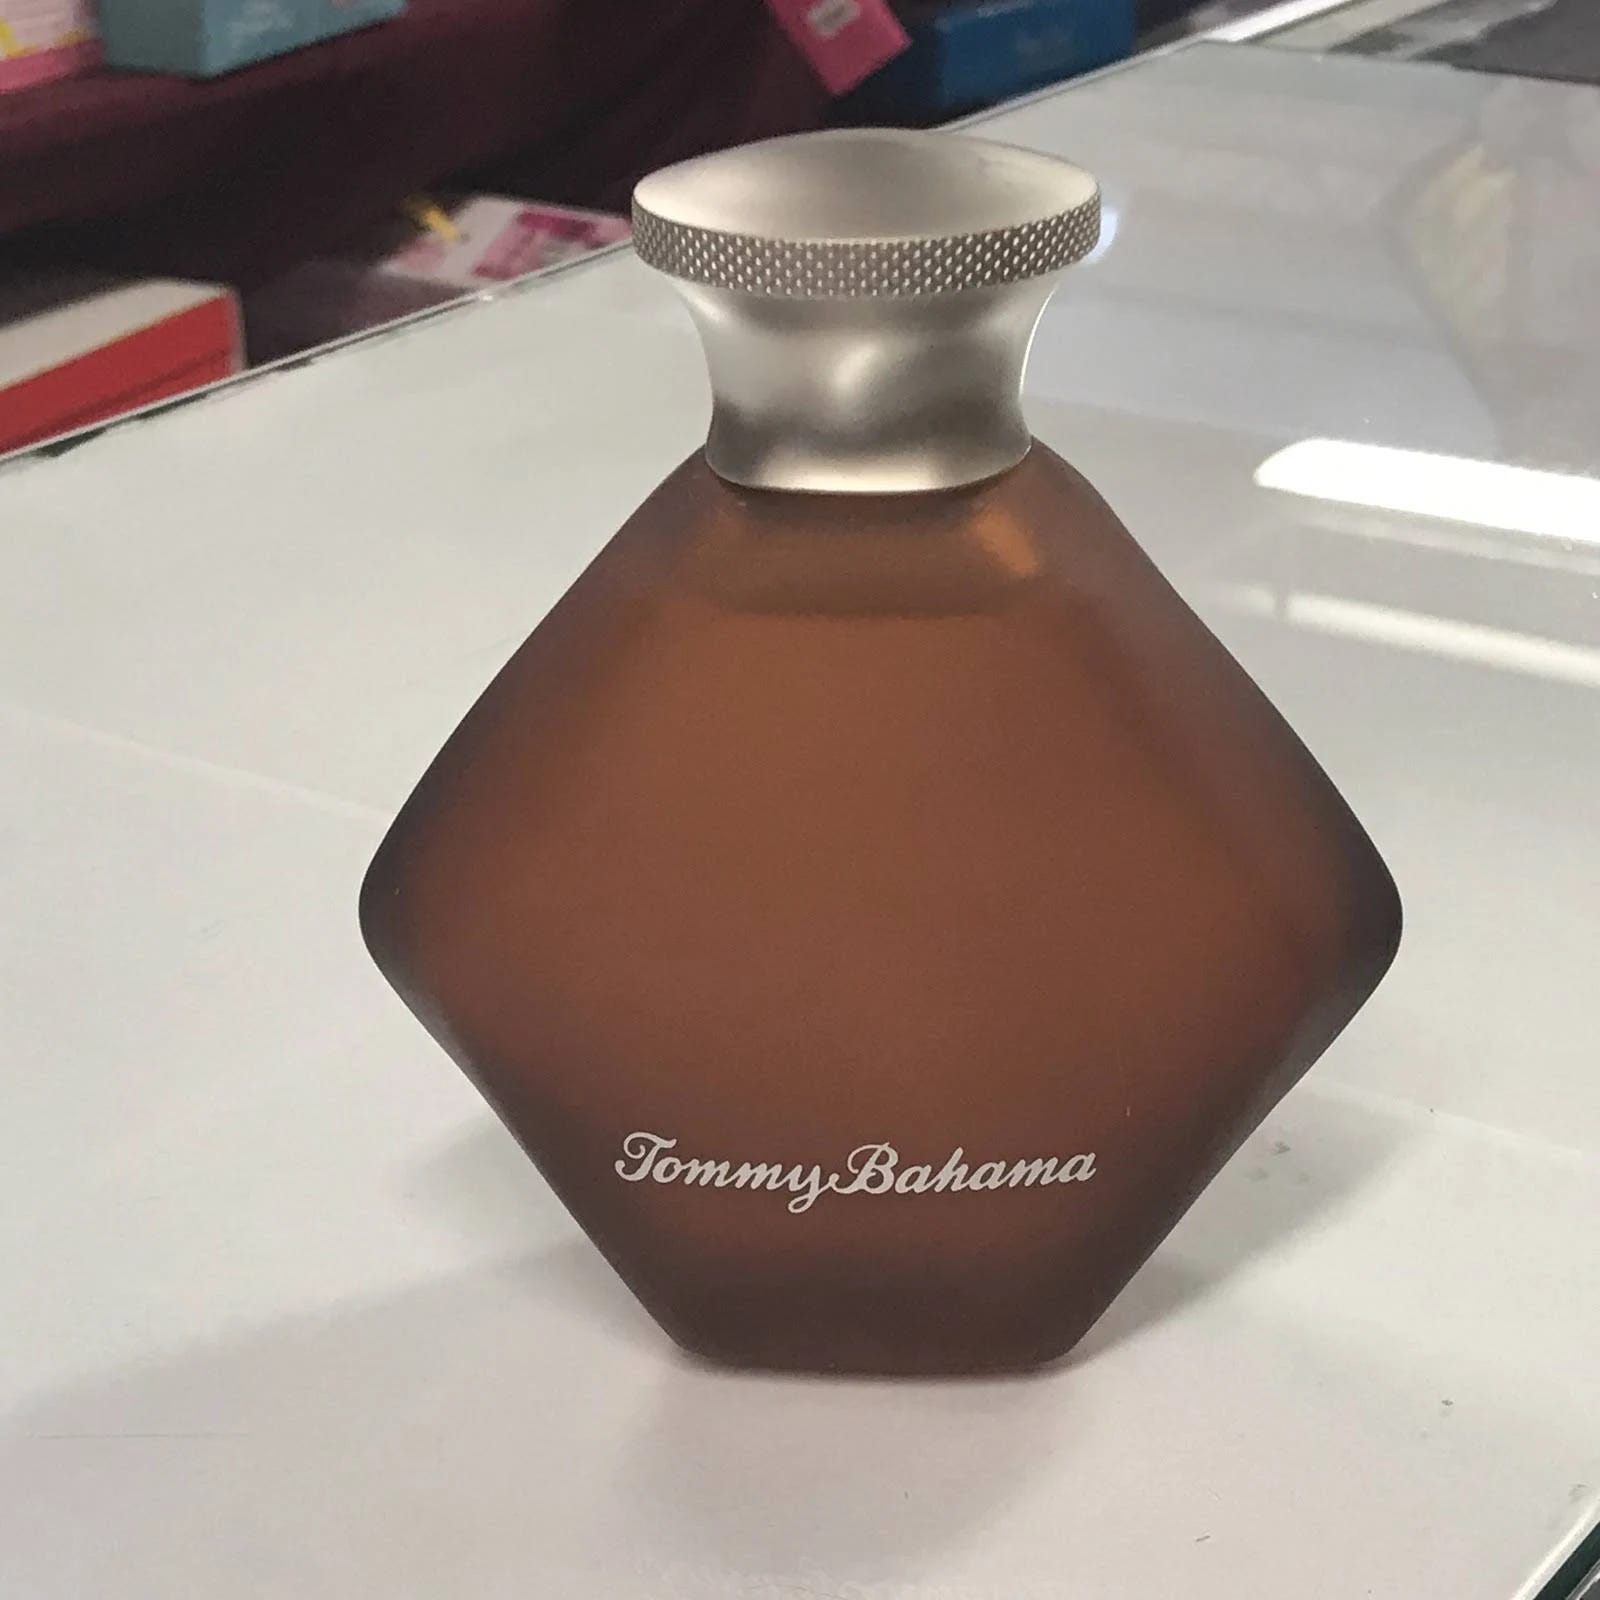 Tommy Bahama Him Aftershave for Men - 3.4 oz Bottle | Image